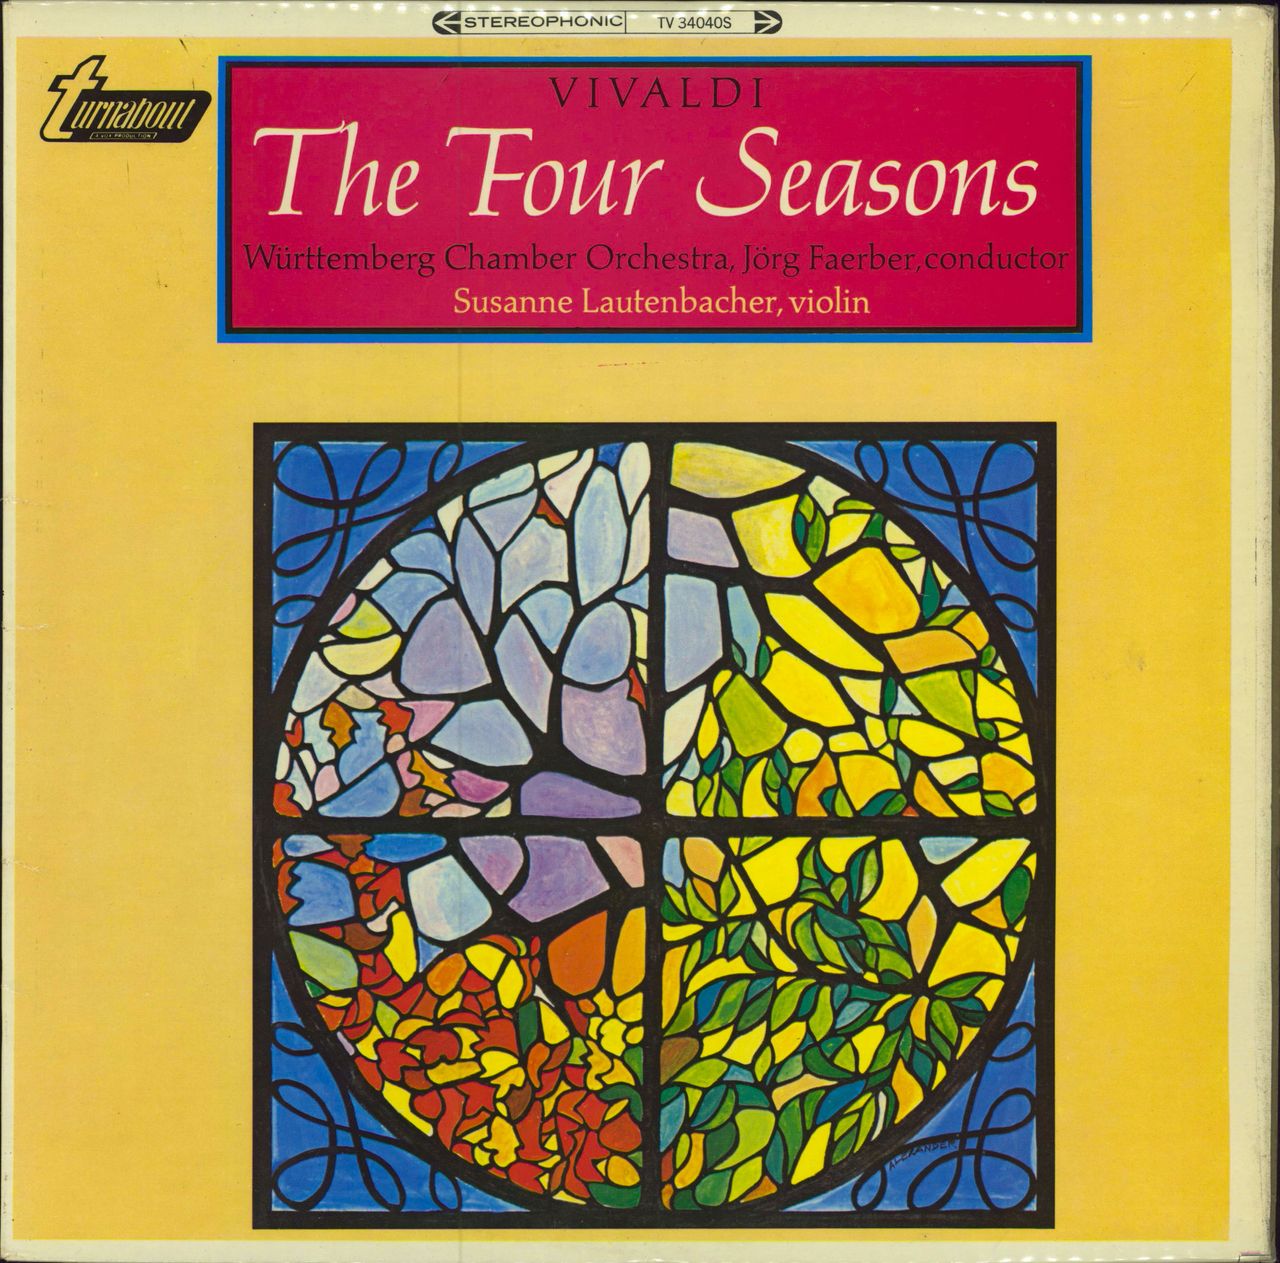 Antonio Vivaldi Vivaldi: The Four Seasons UK vinyl LP album (LP record) TV34040S